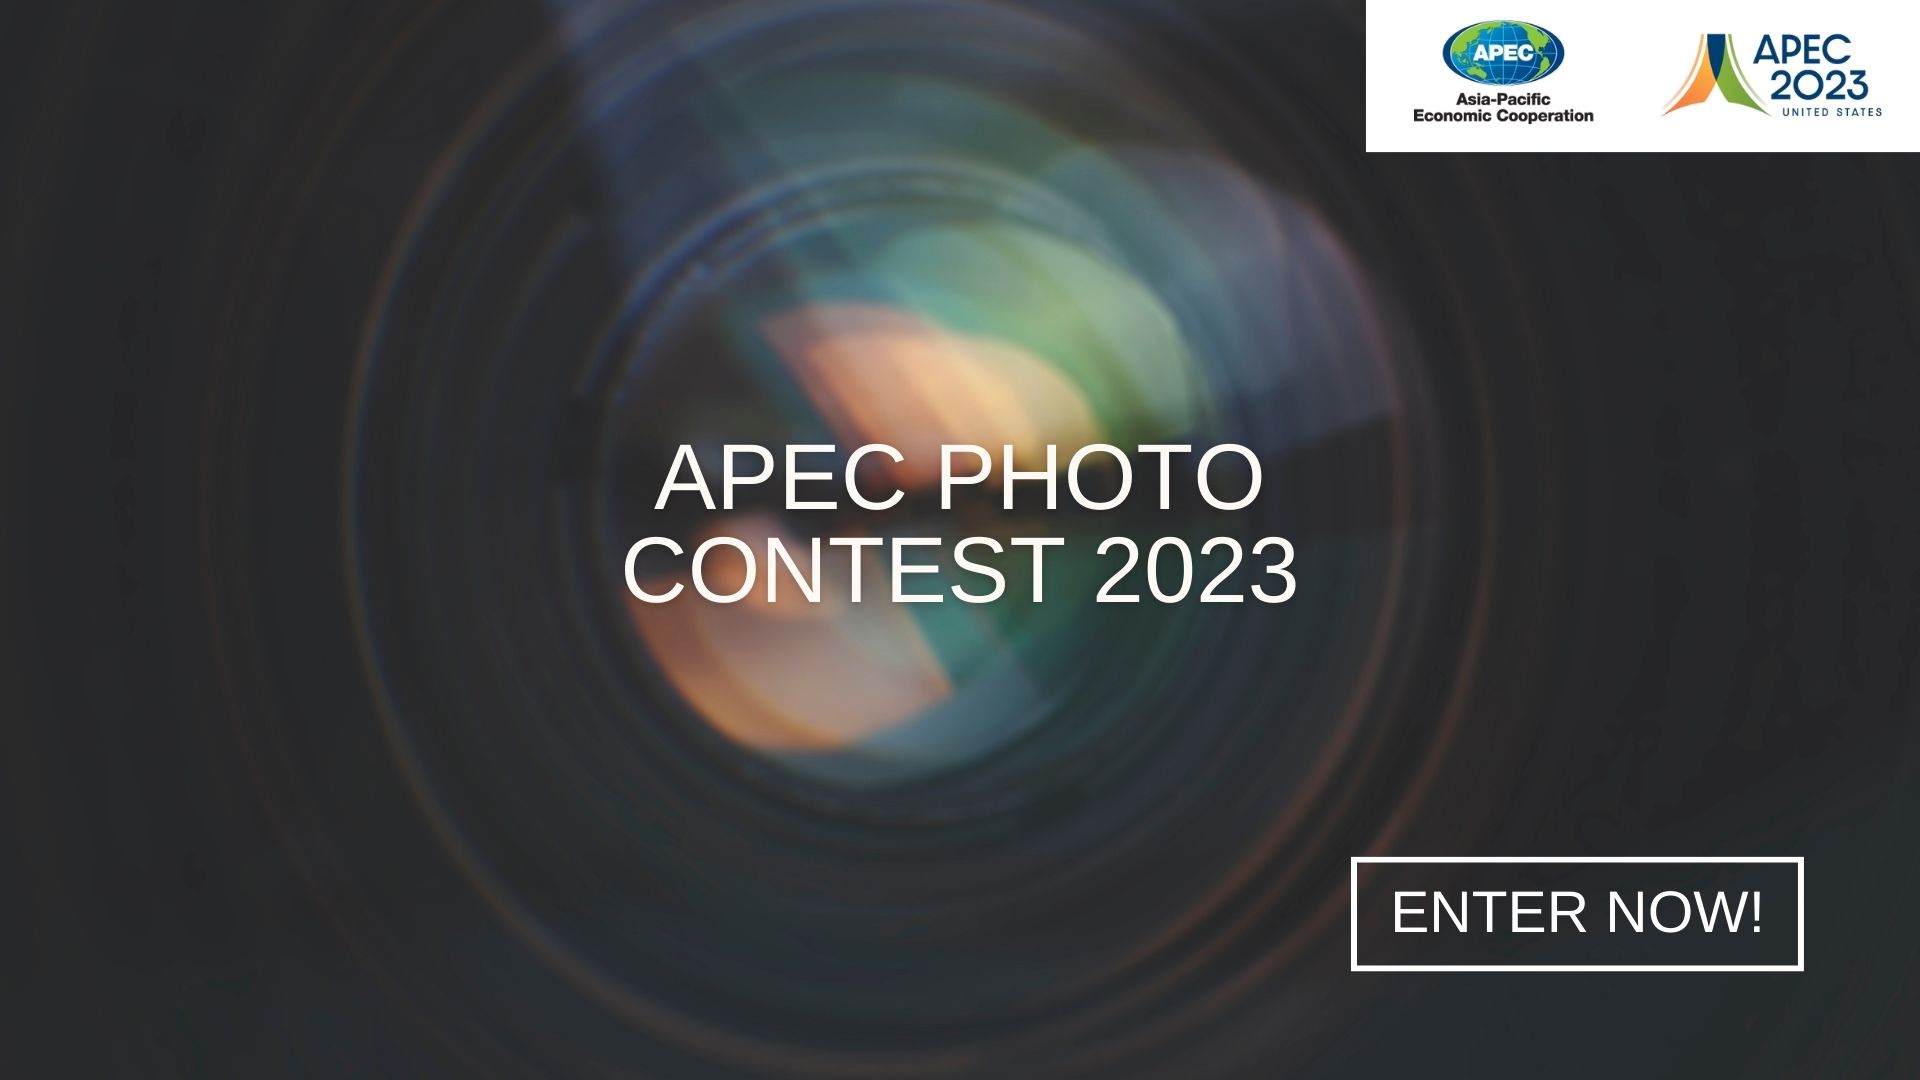 APEC Photo Contest 2023 APEC pic